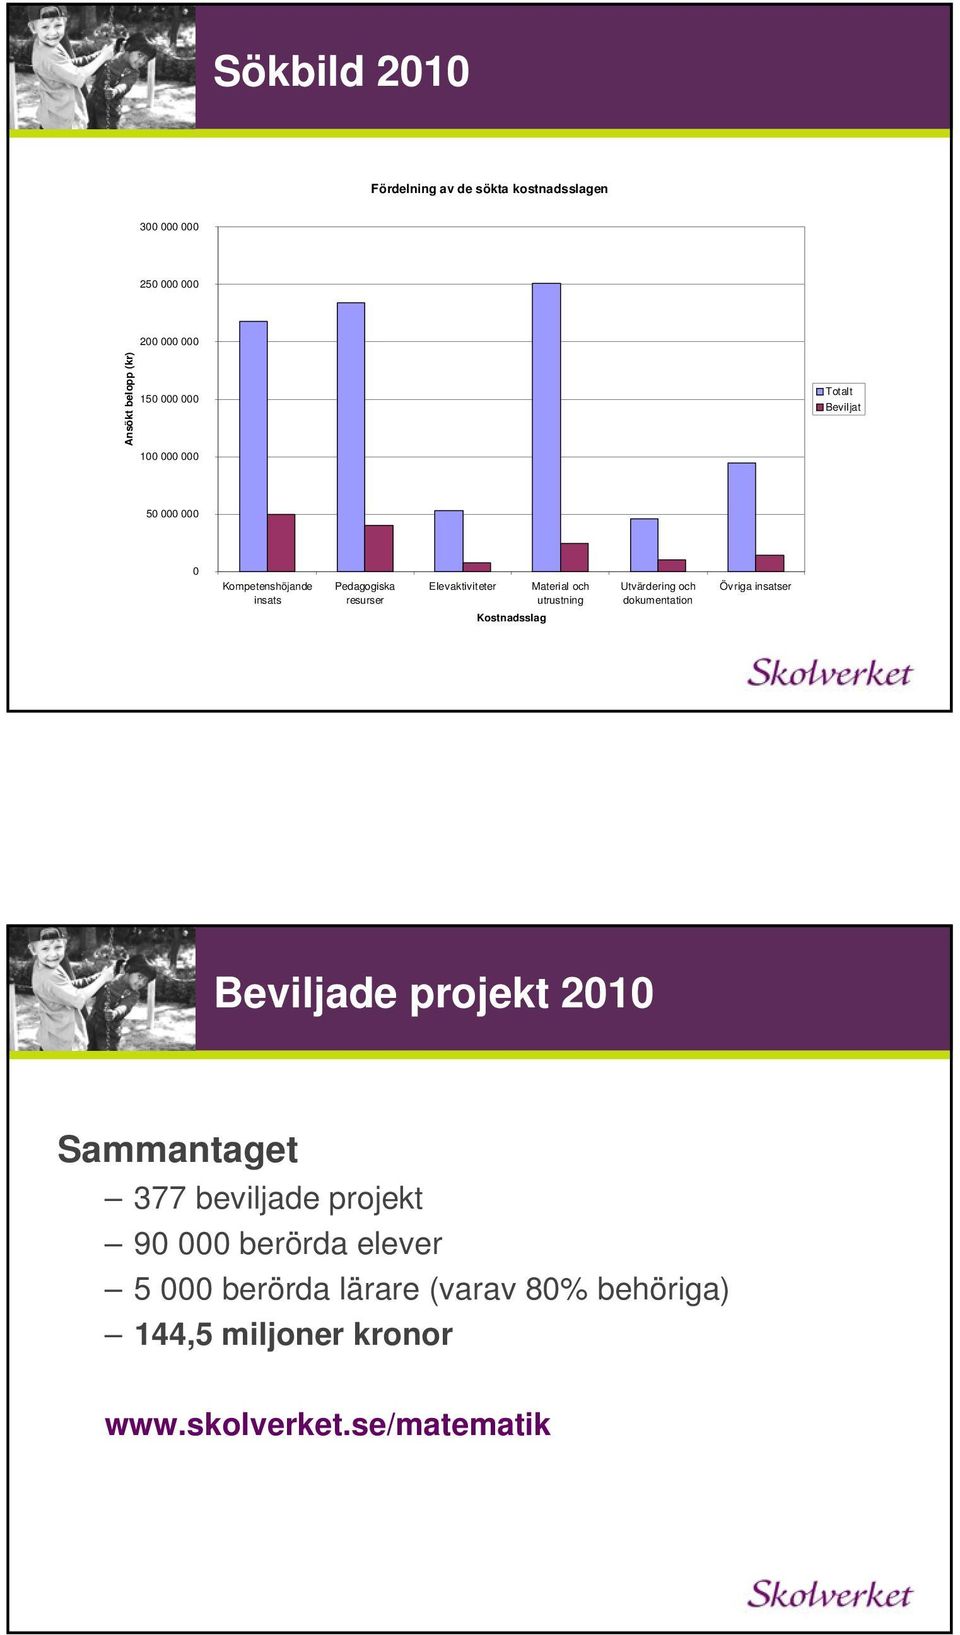 Övriga insatser insats resurser utrustning dokumentation Kostnadsslag Beviljade projekt 2010 Sammantaget 377 beviljade